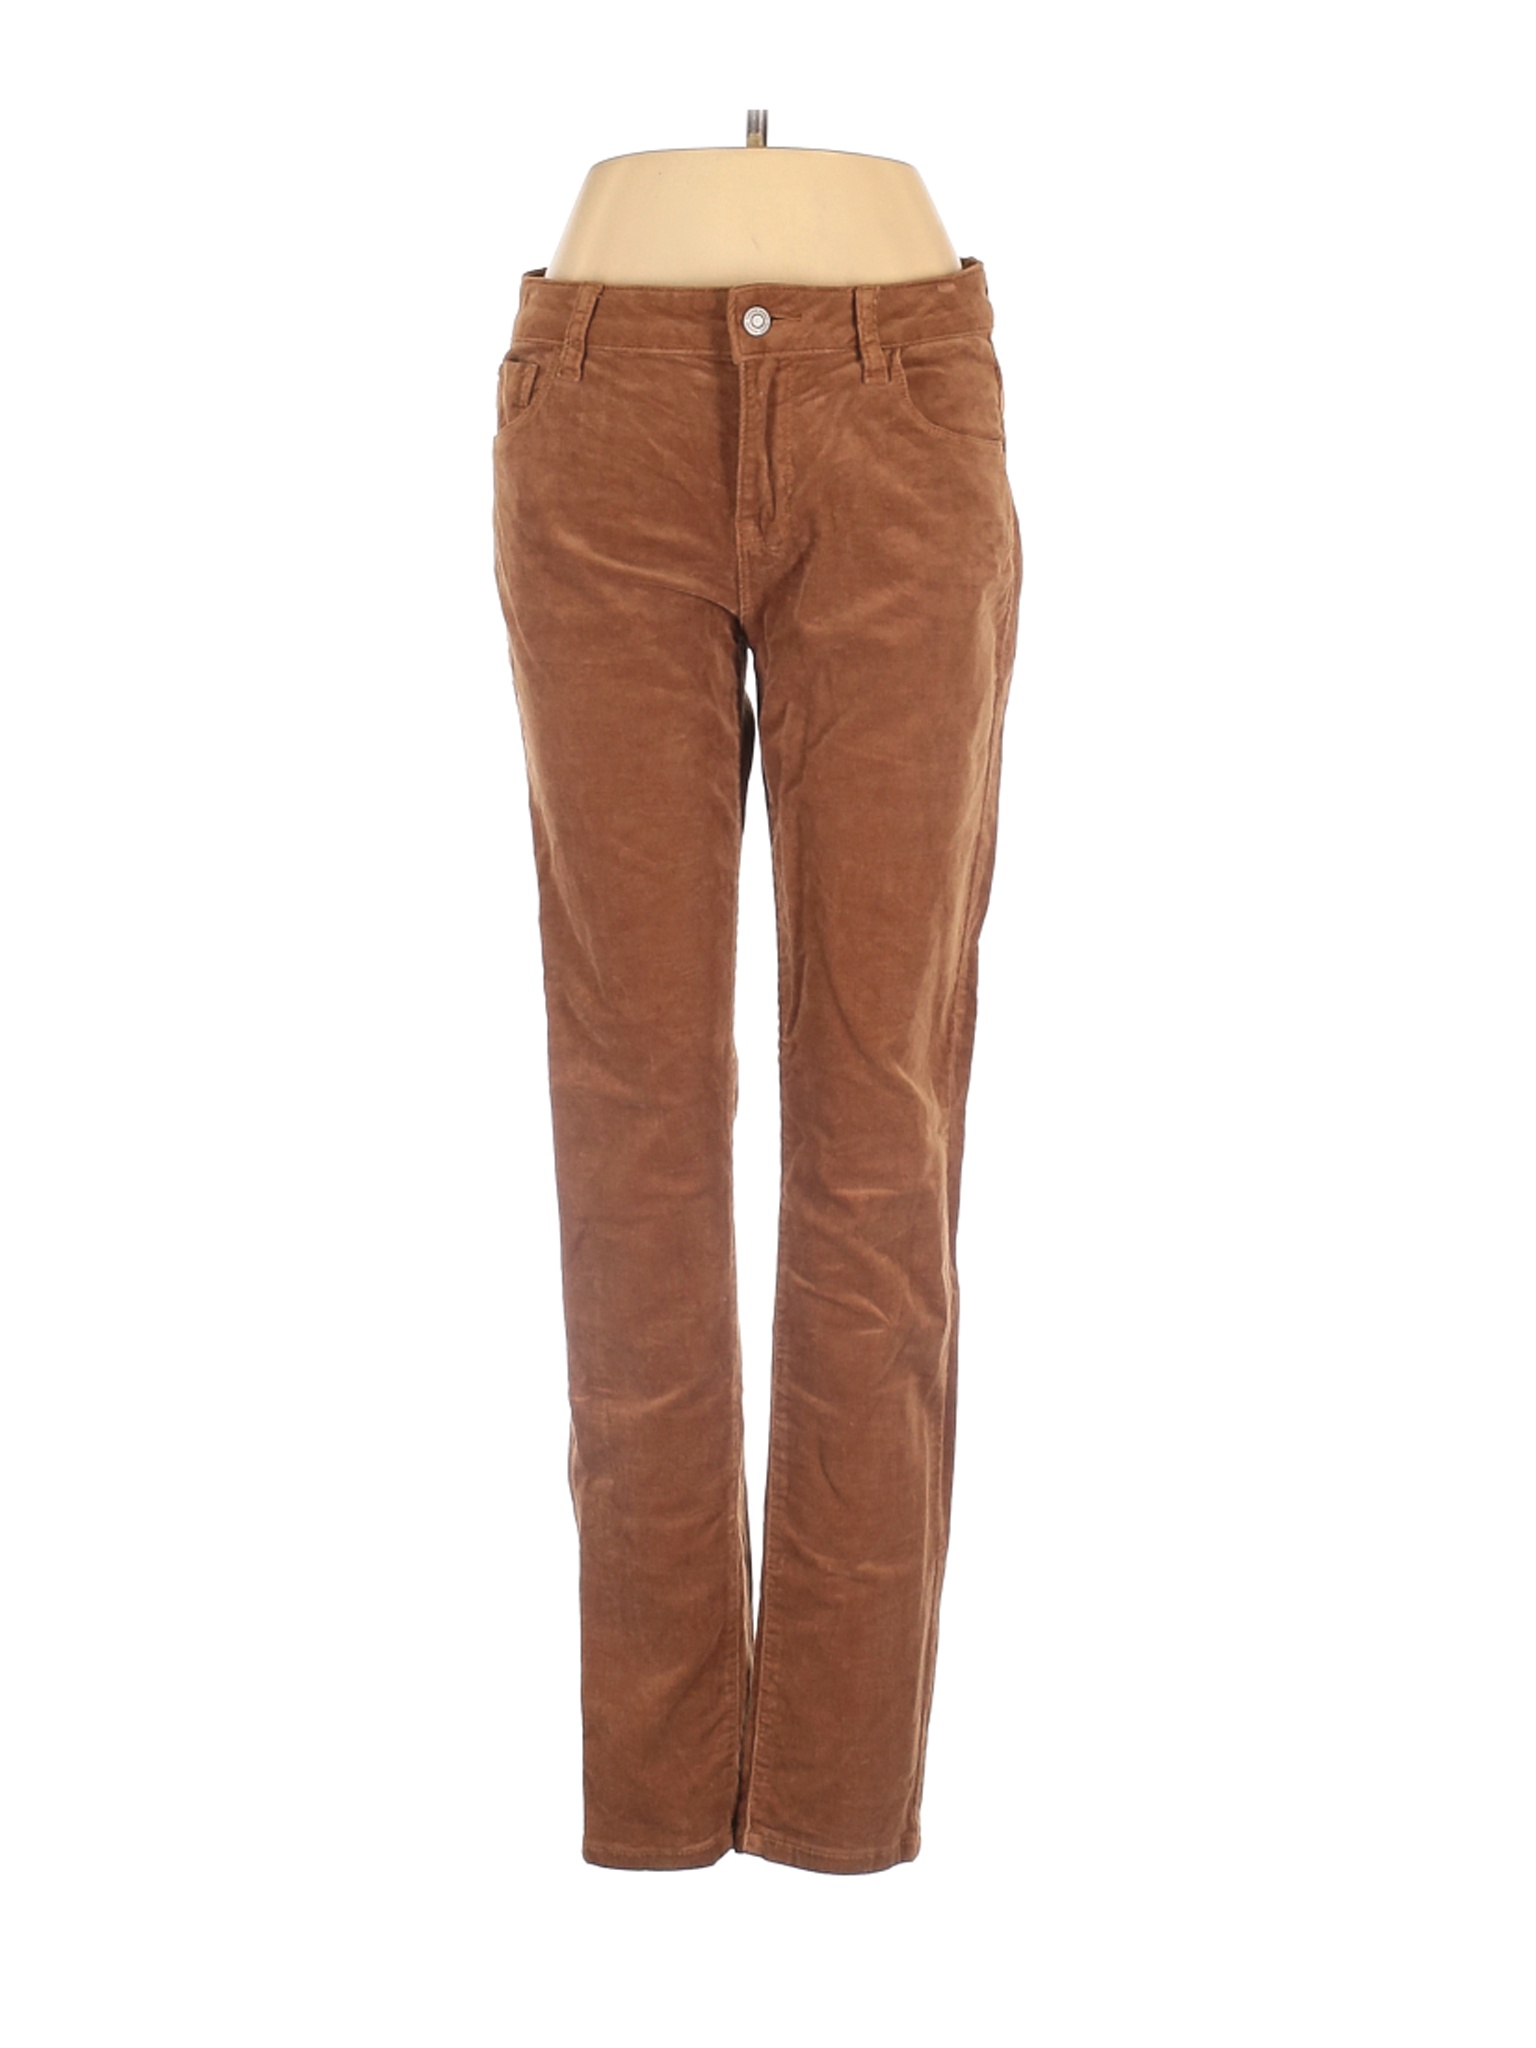 Kensie Women Brown Casual Pants 4 | eBay